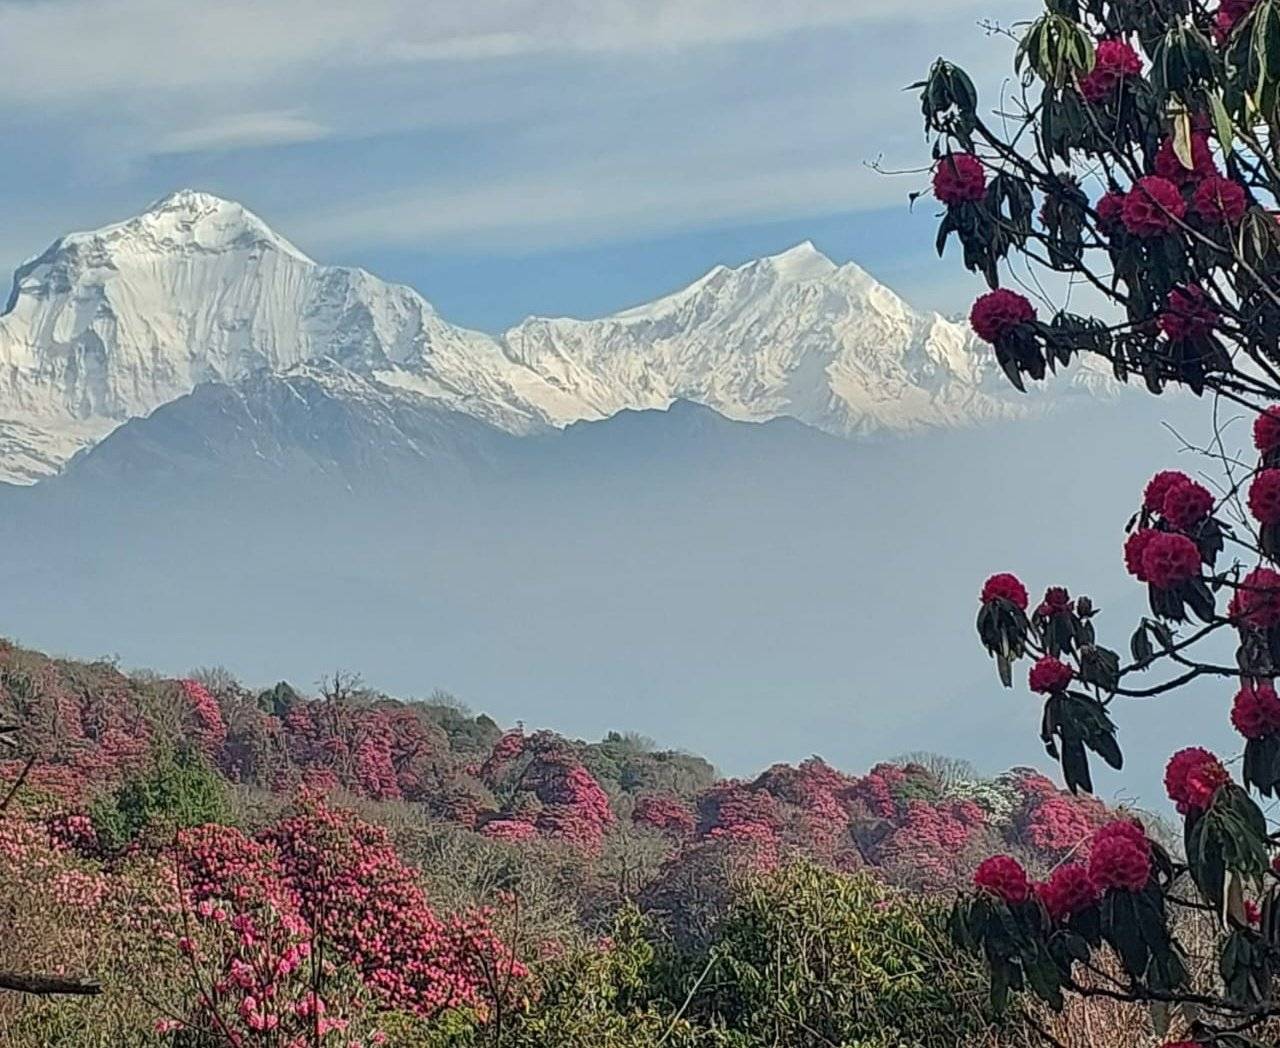 La meraviglia nascosta - Trekking equo nell'Annapurna